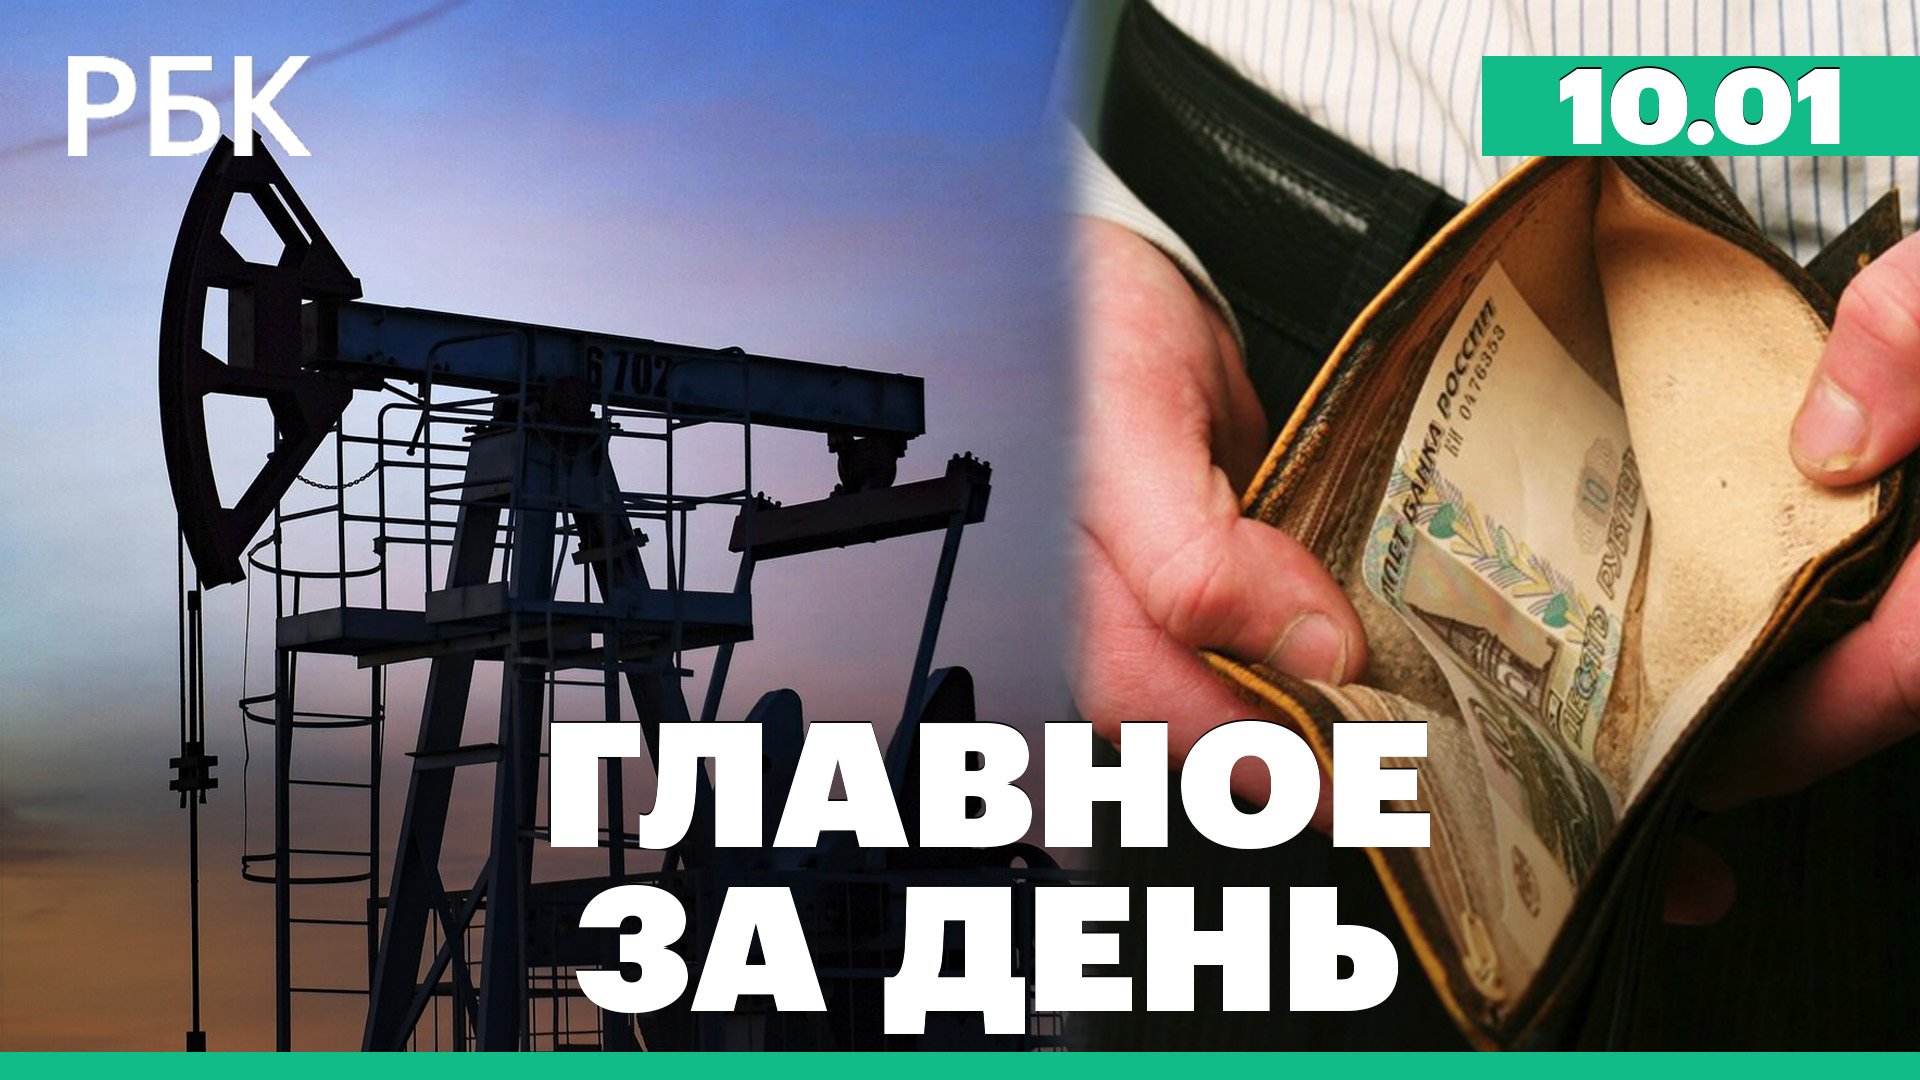 В G7 обсуждают "потолки" цен на нефтепродукты из России. Силуанов: дефицит бюджета 2022 - 3,3 трлн